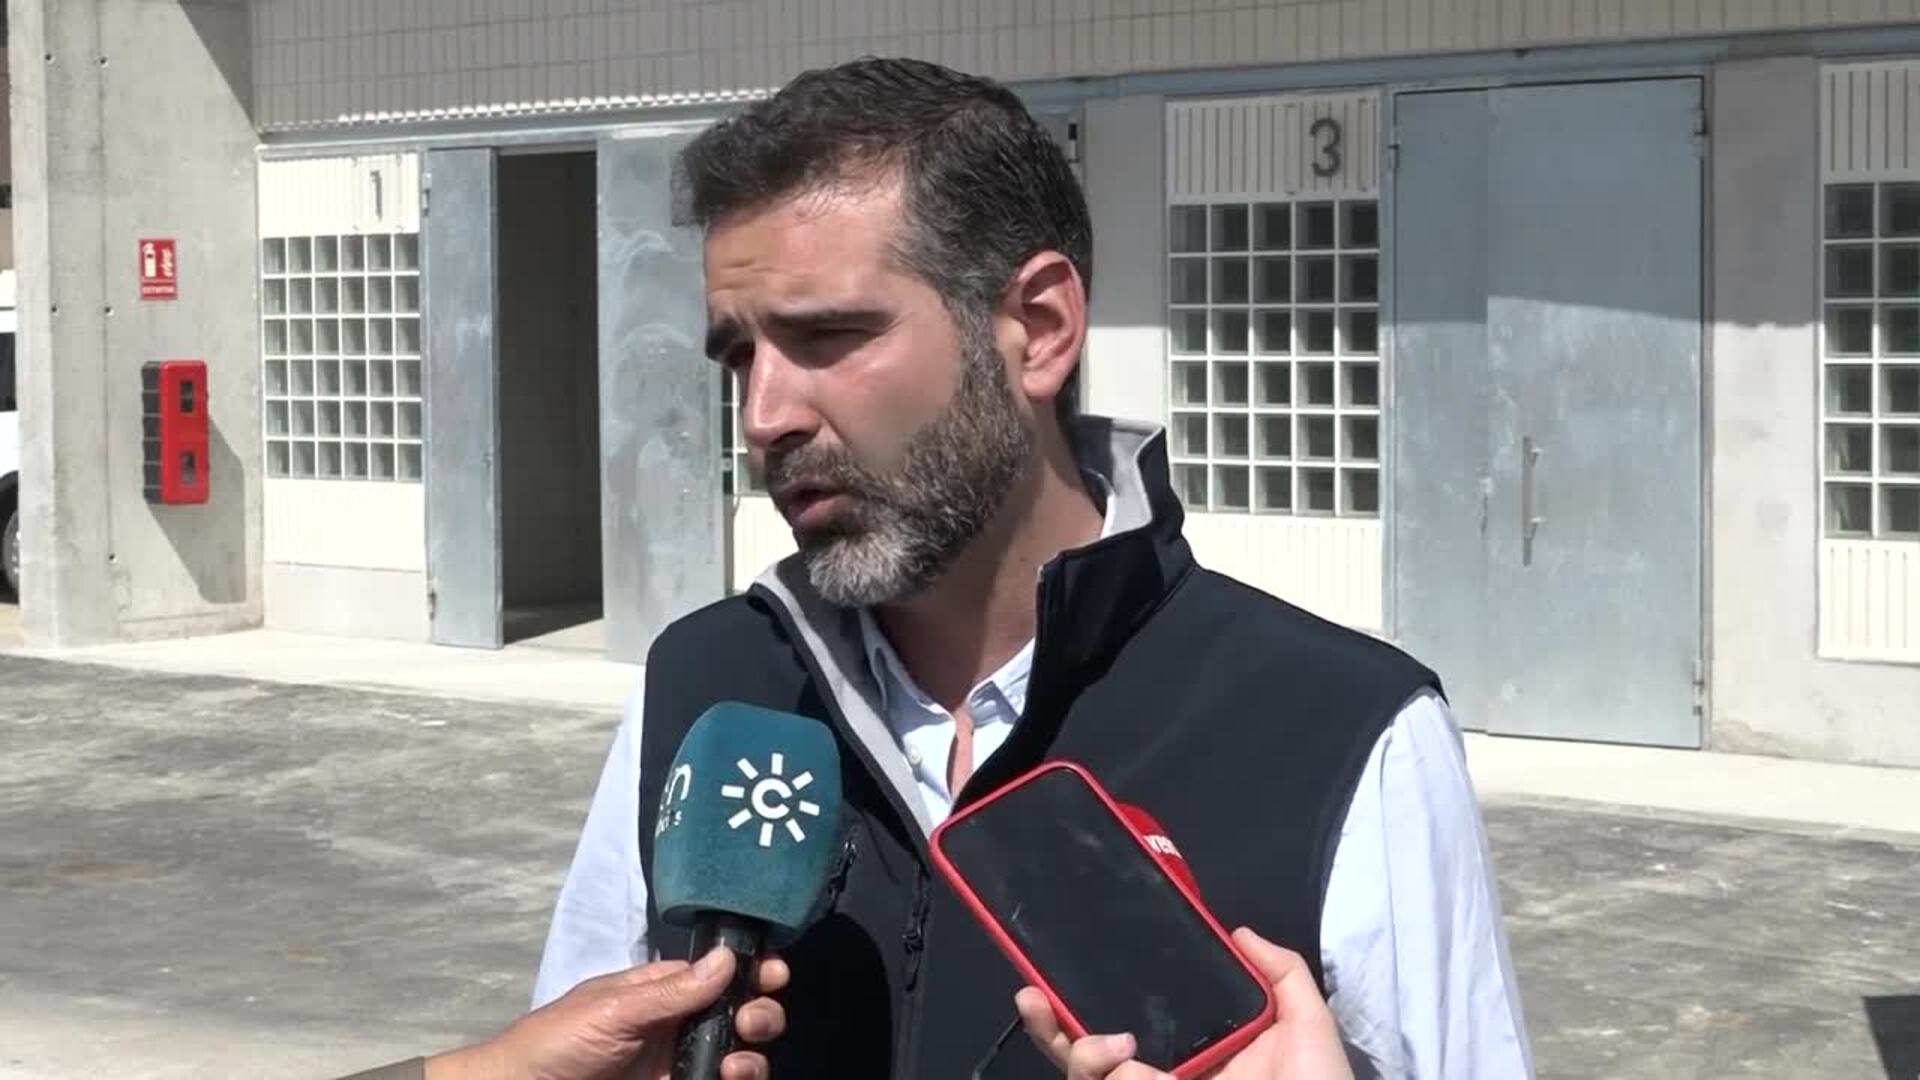 Consejero andaluz: "El Algarrobico jamás debiera haberse prolongado en el tiempo"